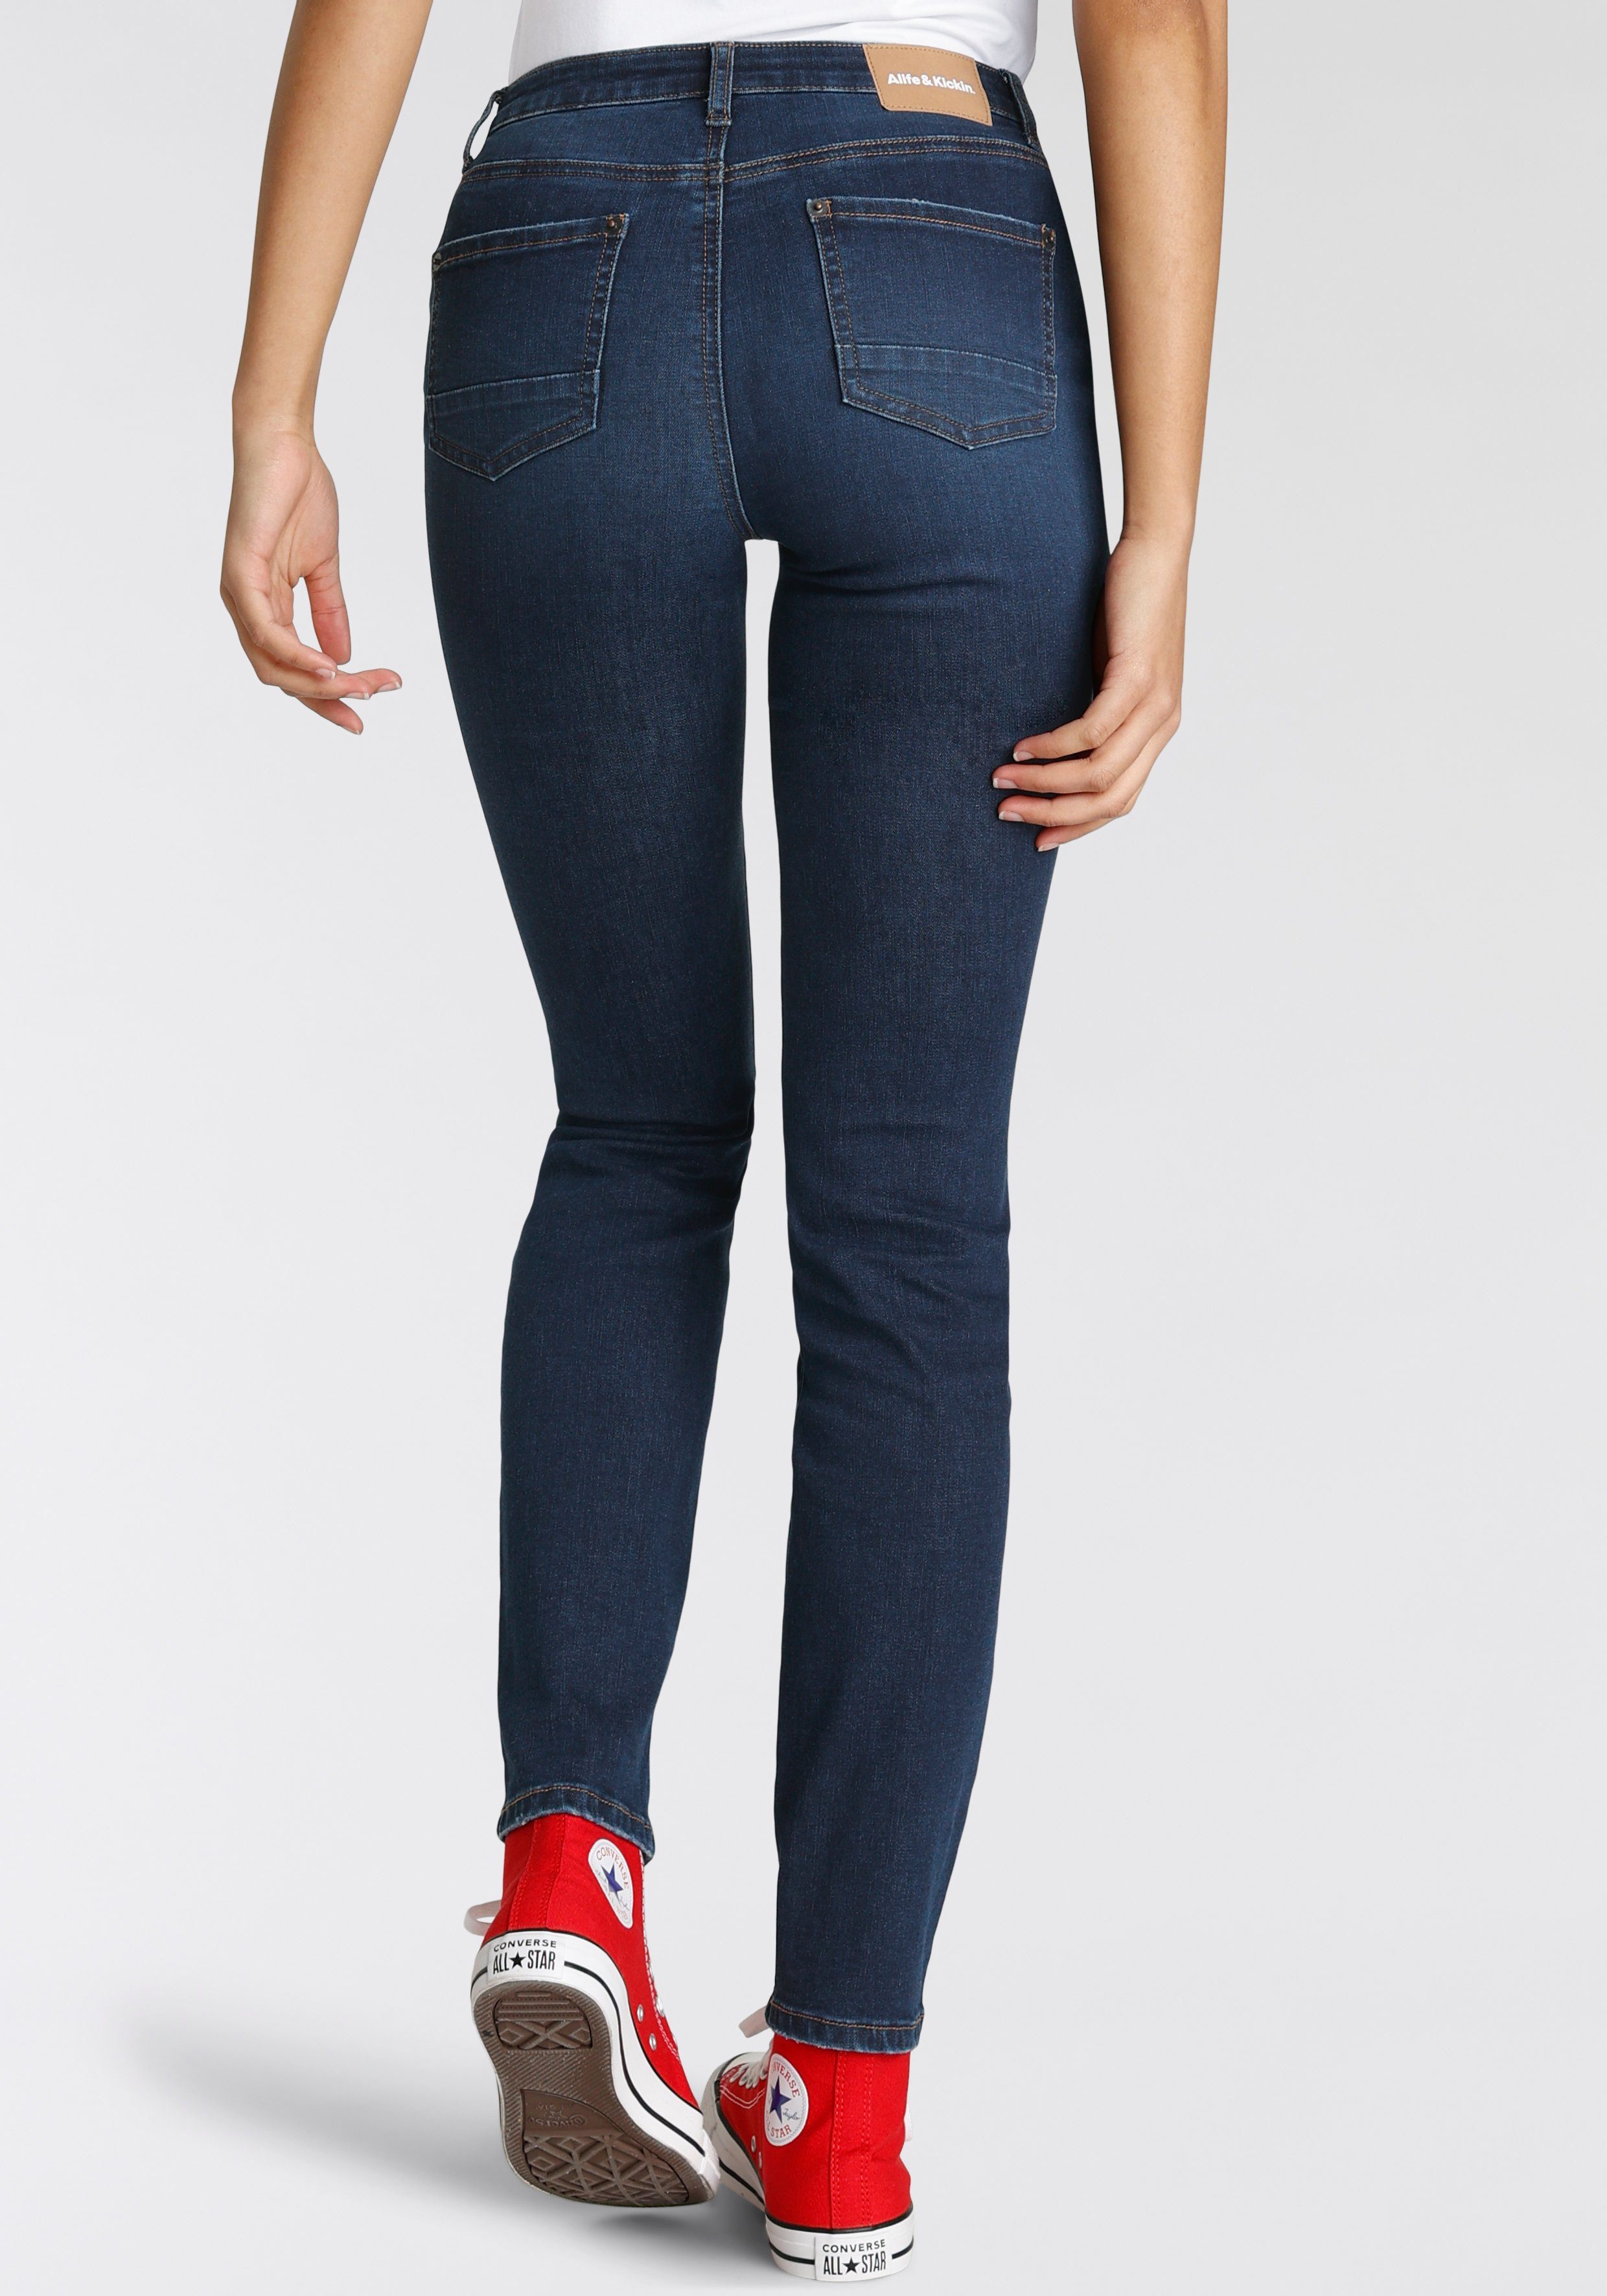 used High-waist-Jeans Alife NolaAK used KOLLEKTION Kickin blue NEUE dark & Slim-Fit